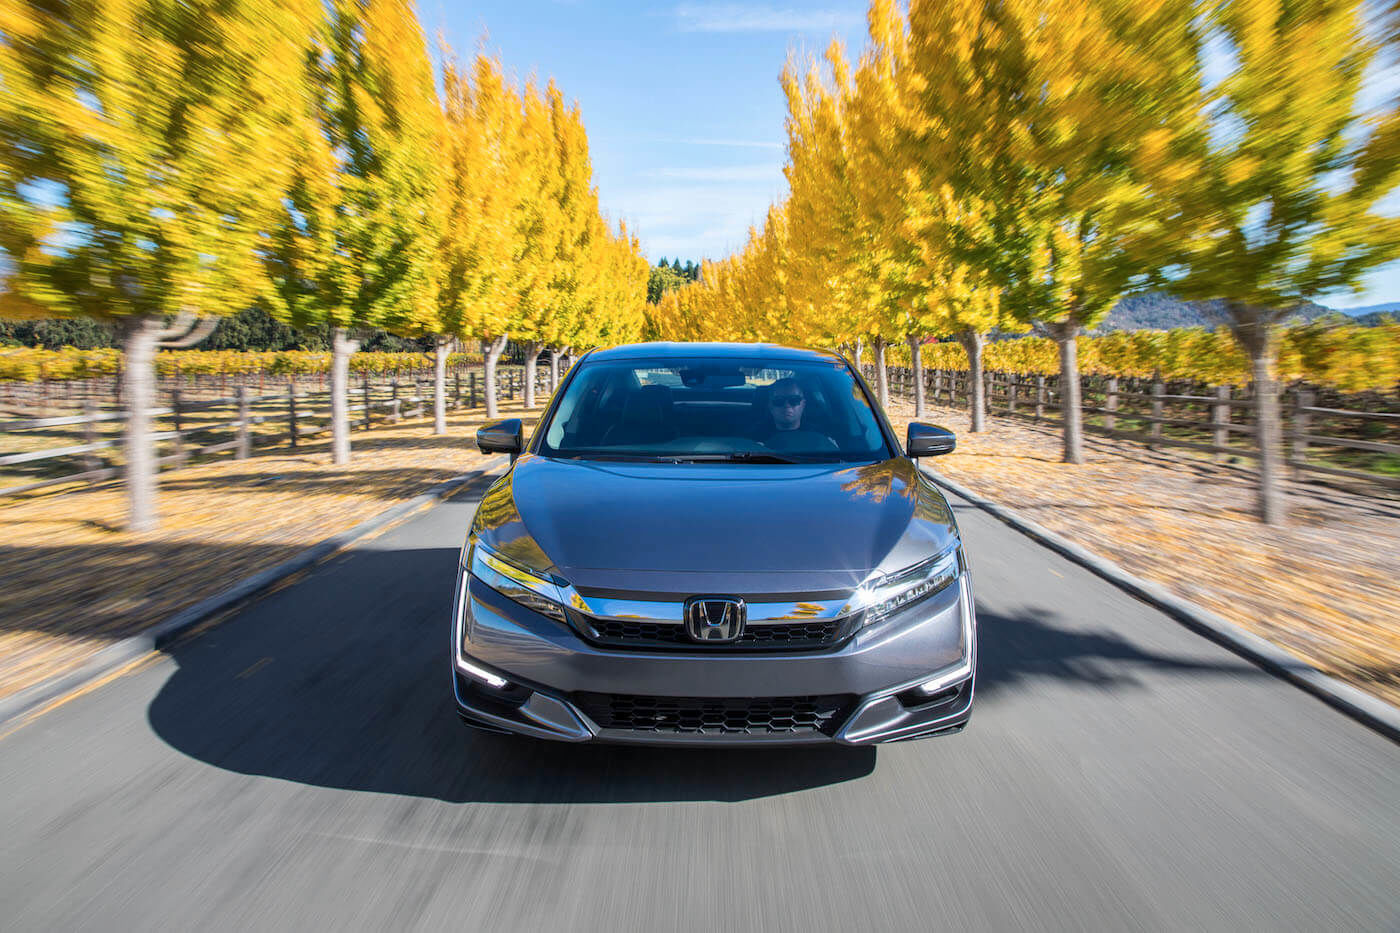 Vue avant de la Honda Clarity hybride rechargeable 2021 grise roulant sur une route longeant les arbres